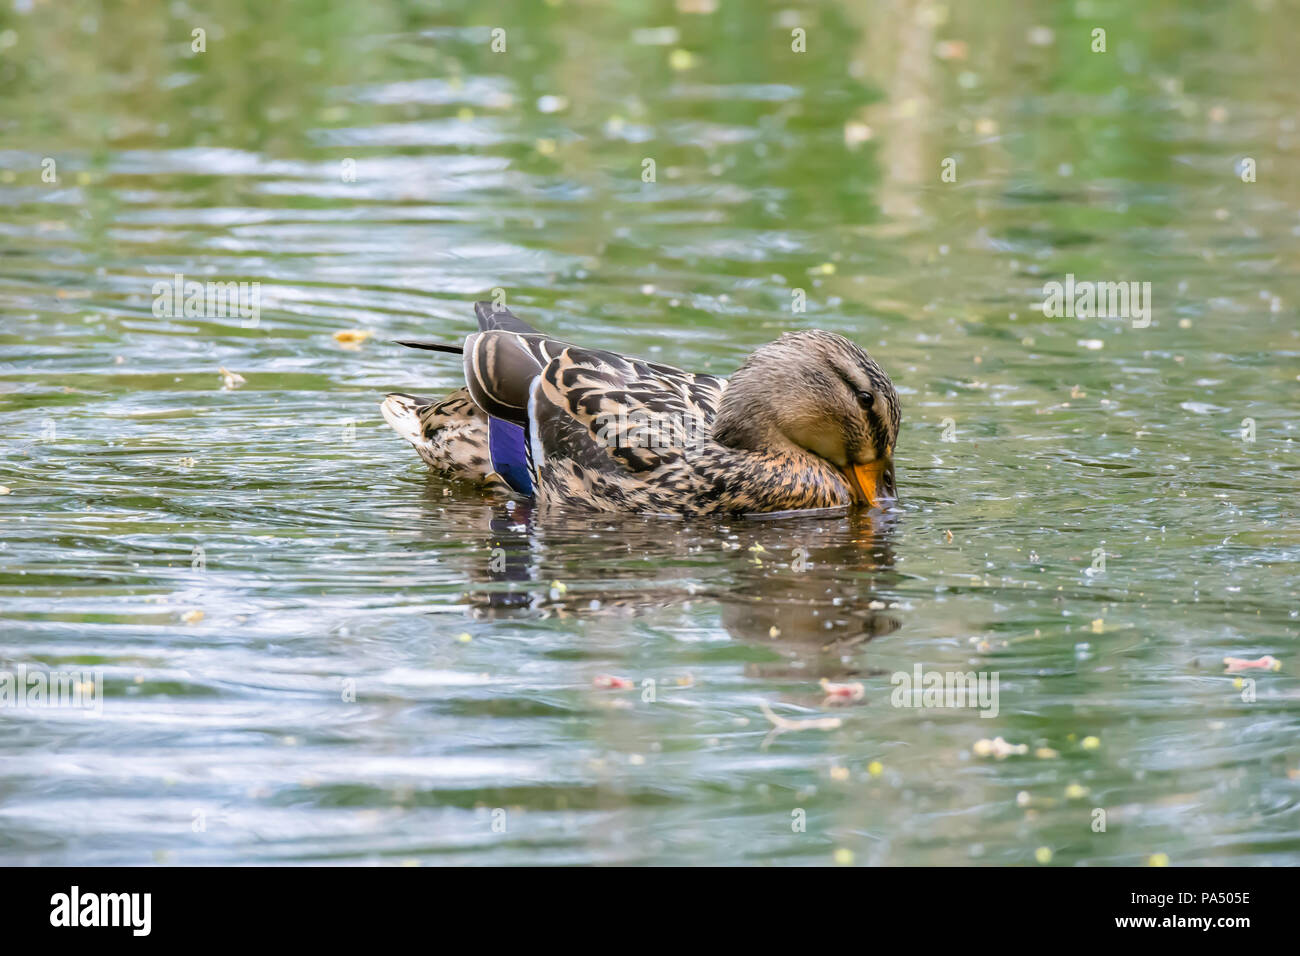 Stockente Weibchen Schwimmen im Teich in der britischen Park. Profil Portrait mit Reflexion im Wasser. Helle Wildlife Fotografie. Ente mit Schnabel im Wasser. Stockfoto